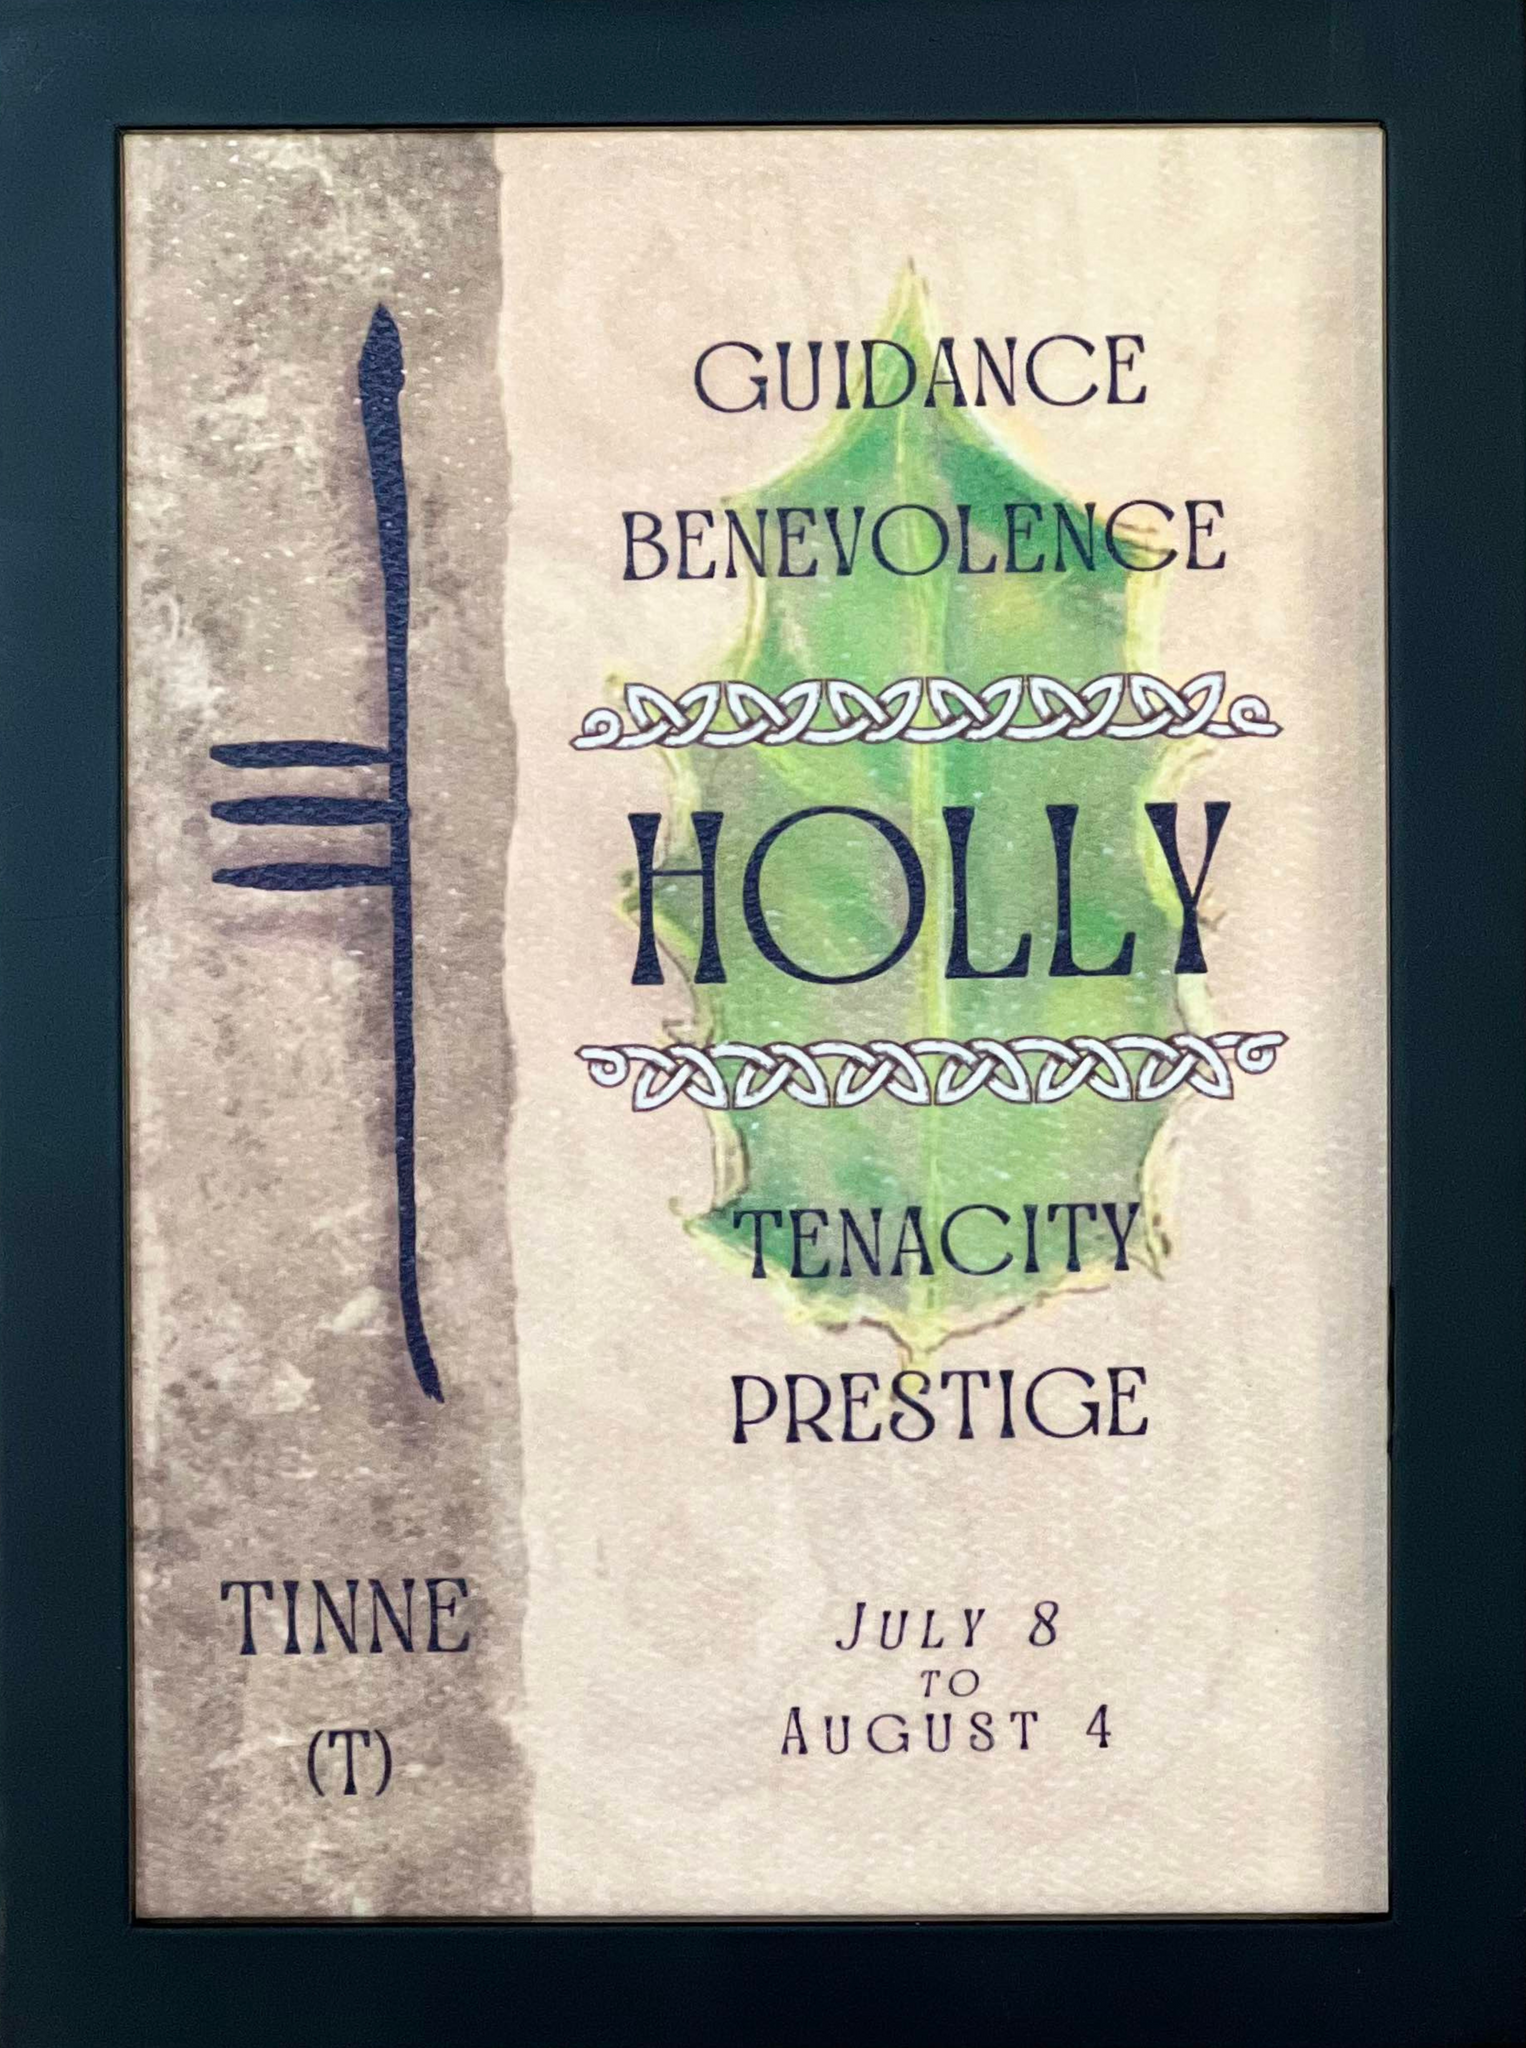 Holly Tree & Ogham Letter Tinne